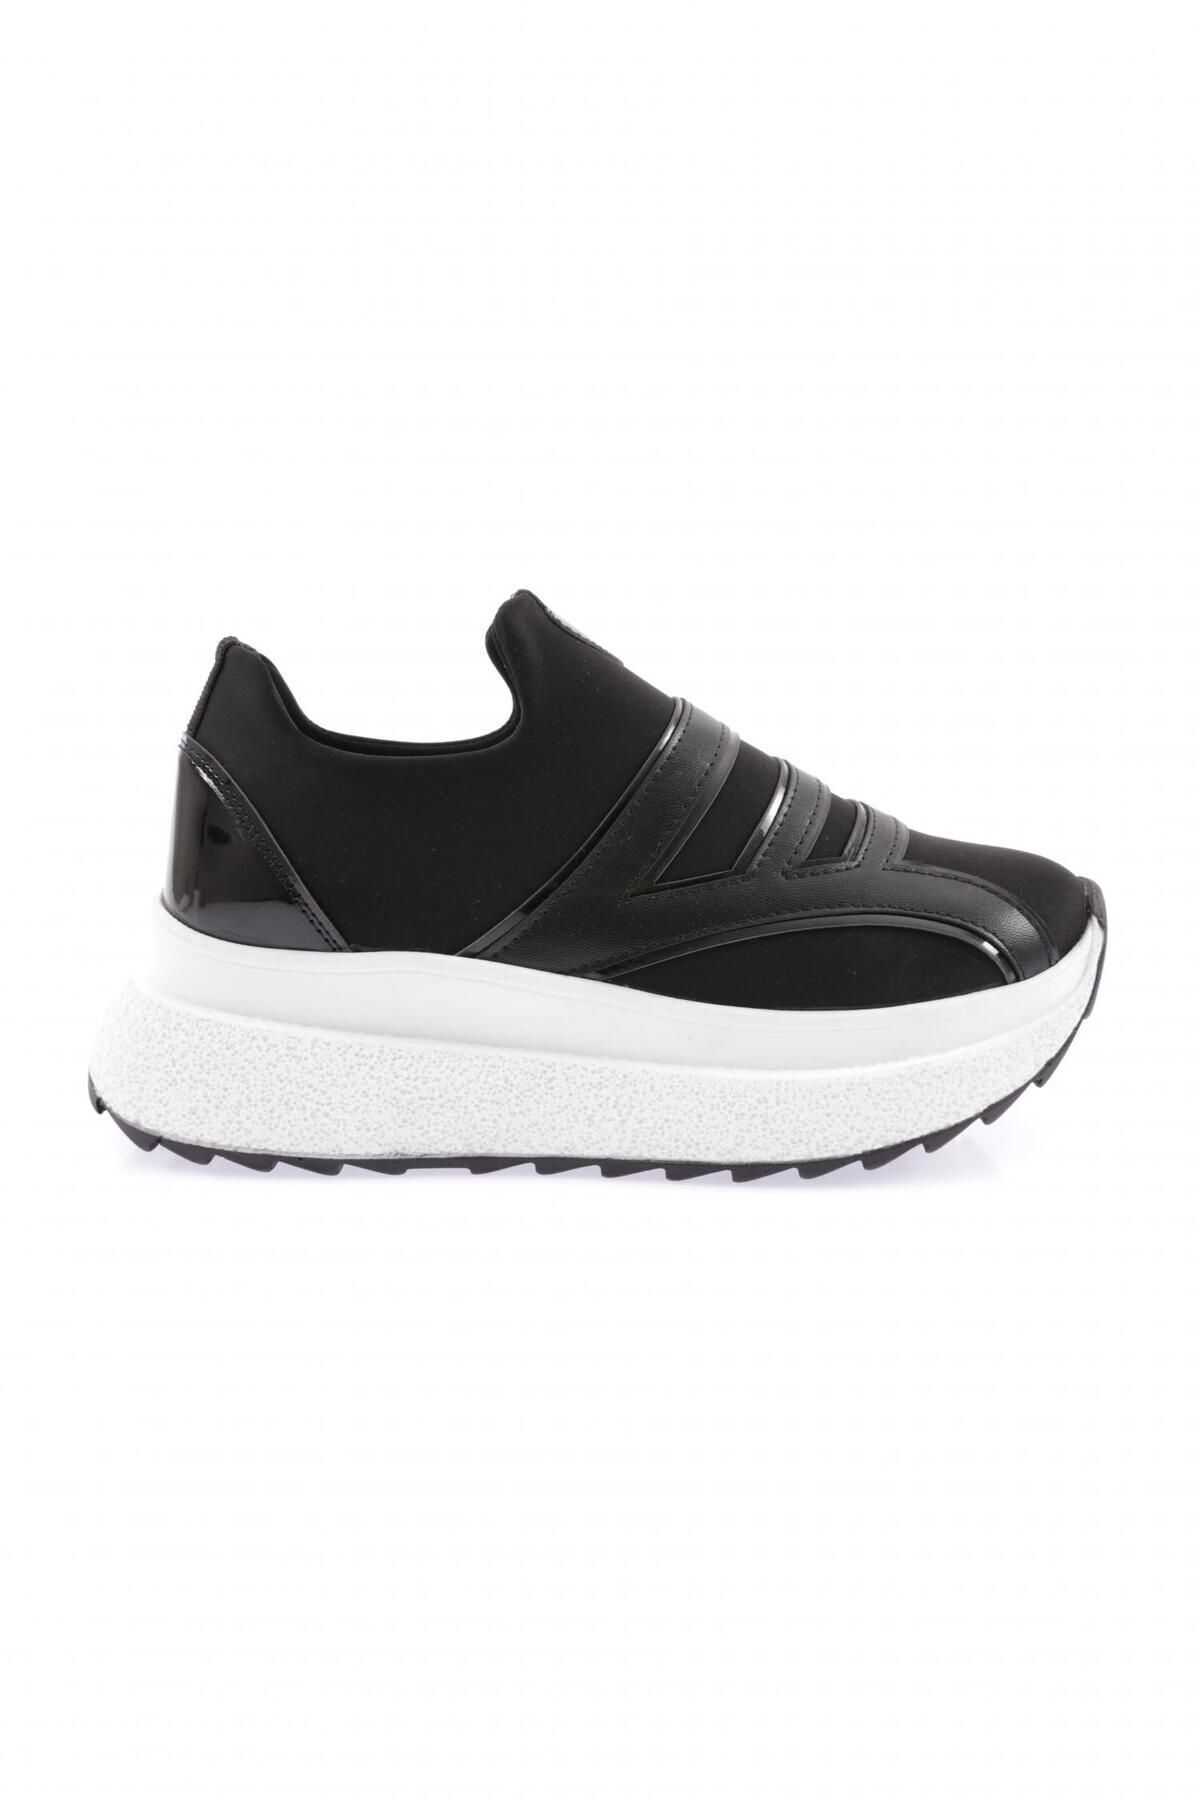 Dgn 0170 Kadın Kalın Taban Sneakers Ayakkabı Siyah Siyah